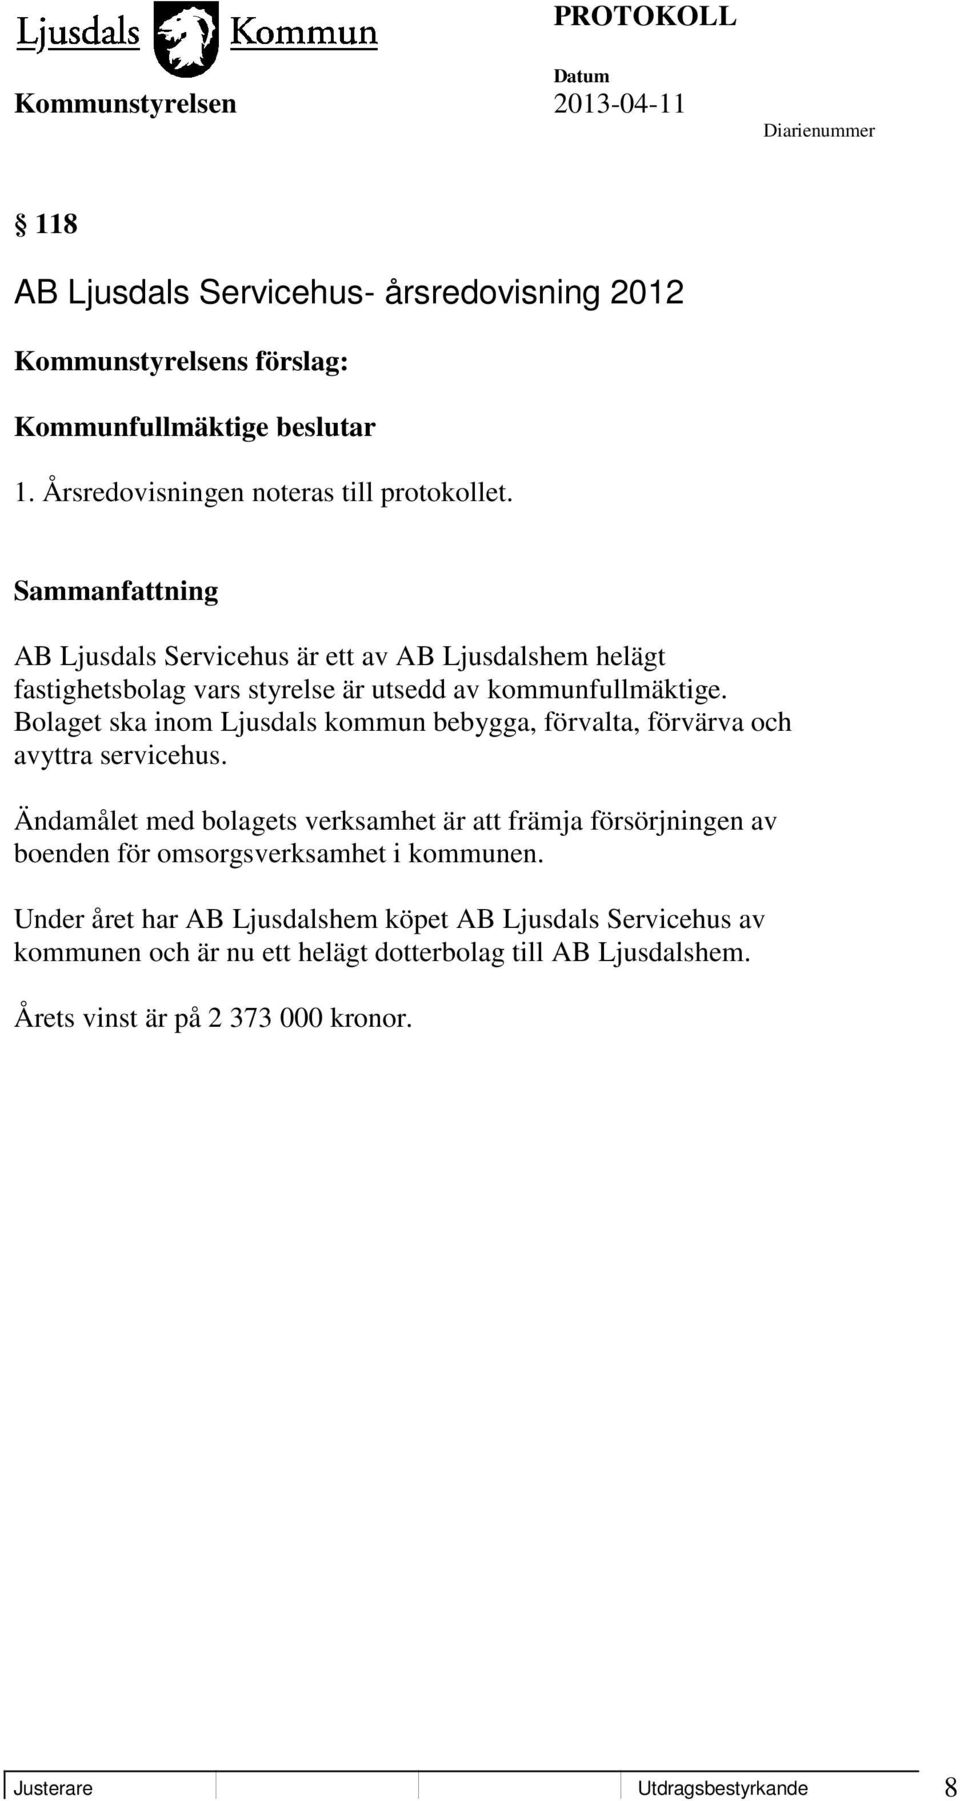 Bolaget ska inom Ljusdals kommun bebygga, förvalta, förvärva och avyttra servicehus.